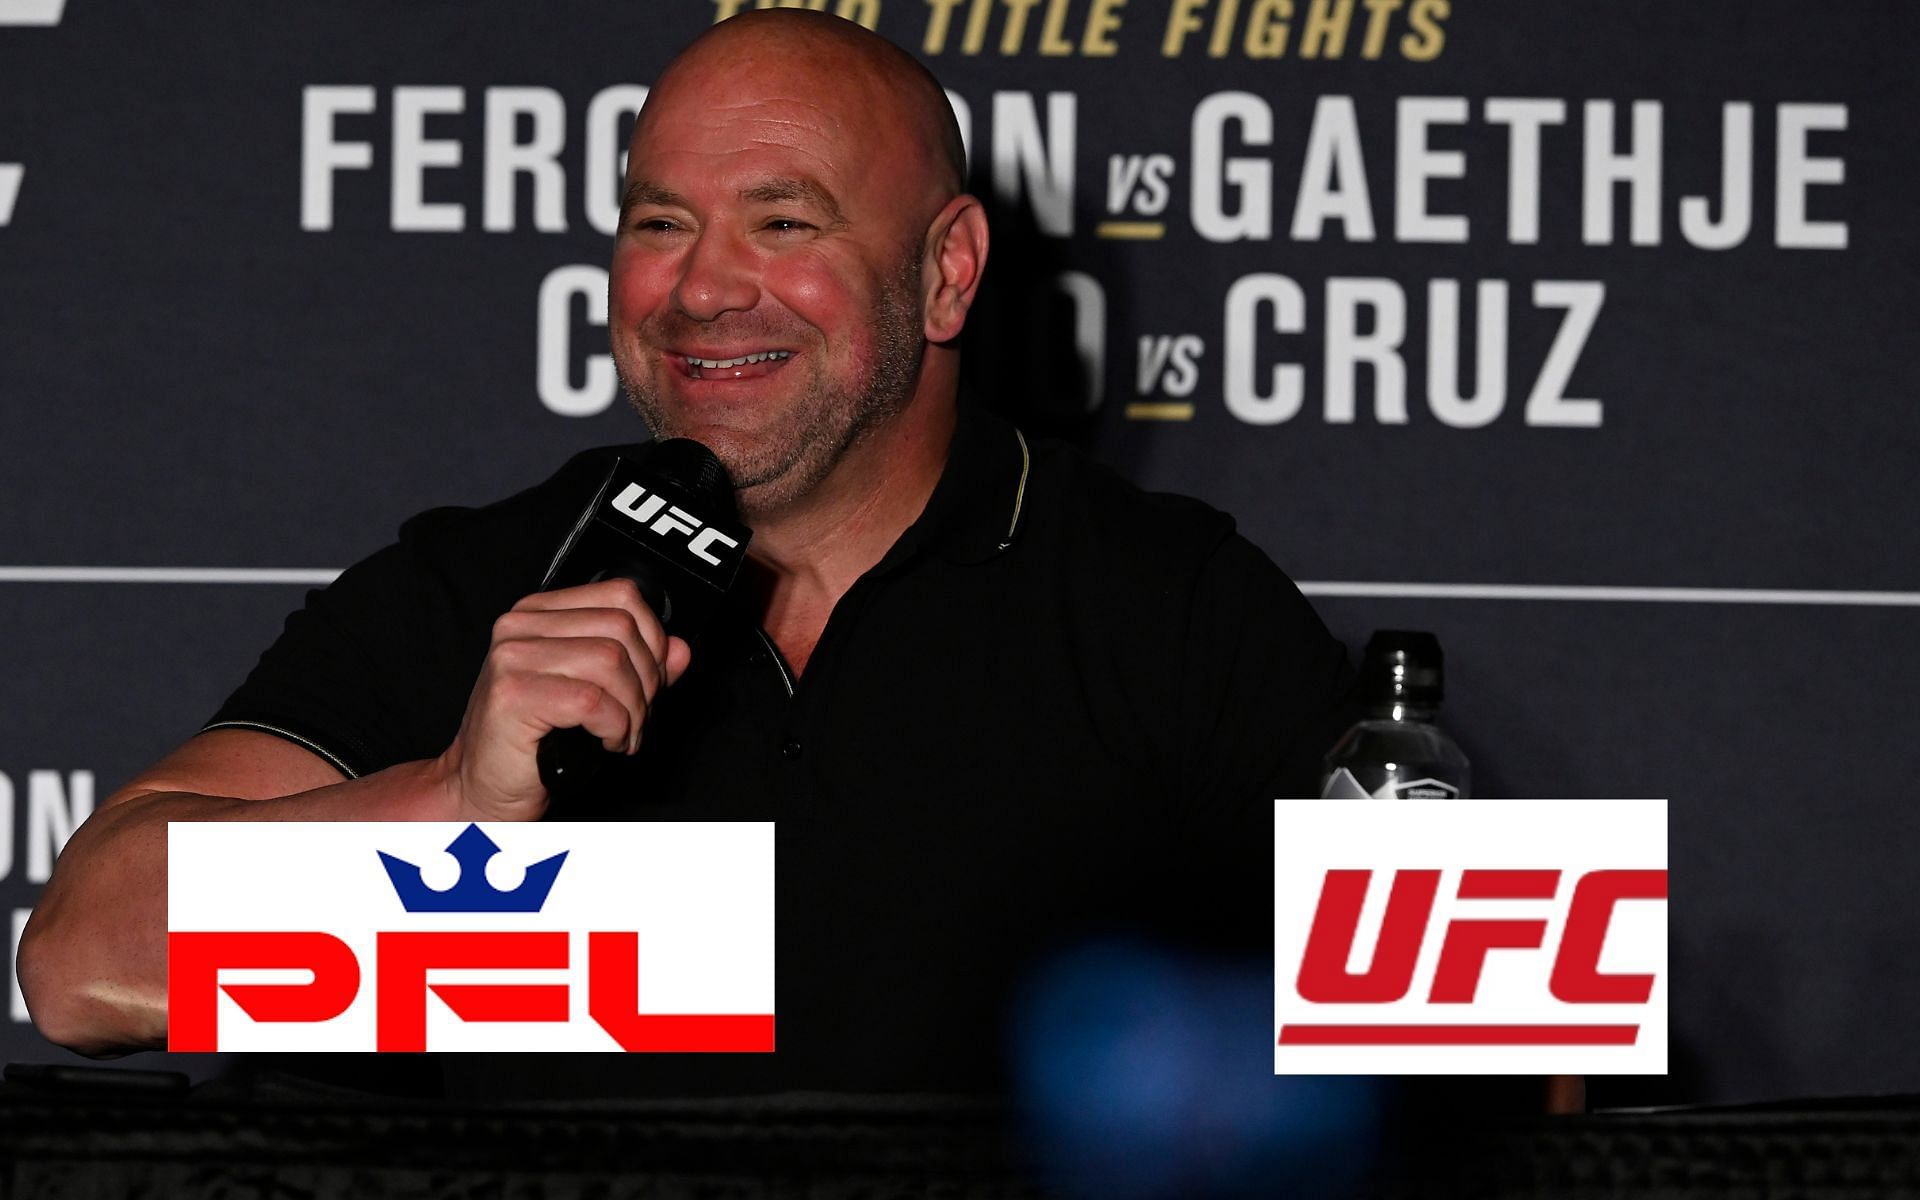 UFC president Dana White [*Image courtesy: Getty Images; pflmma.com; ufc.com]